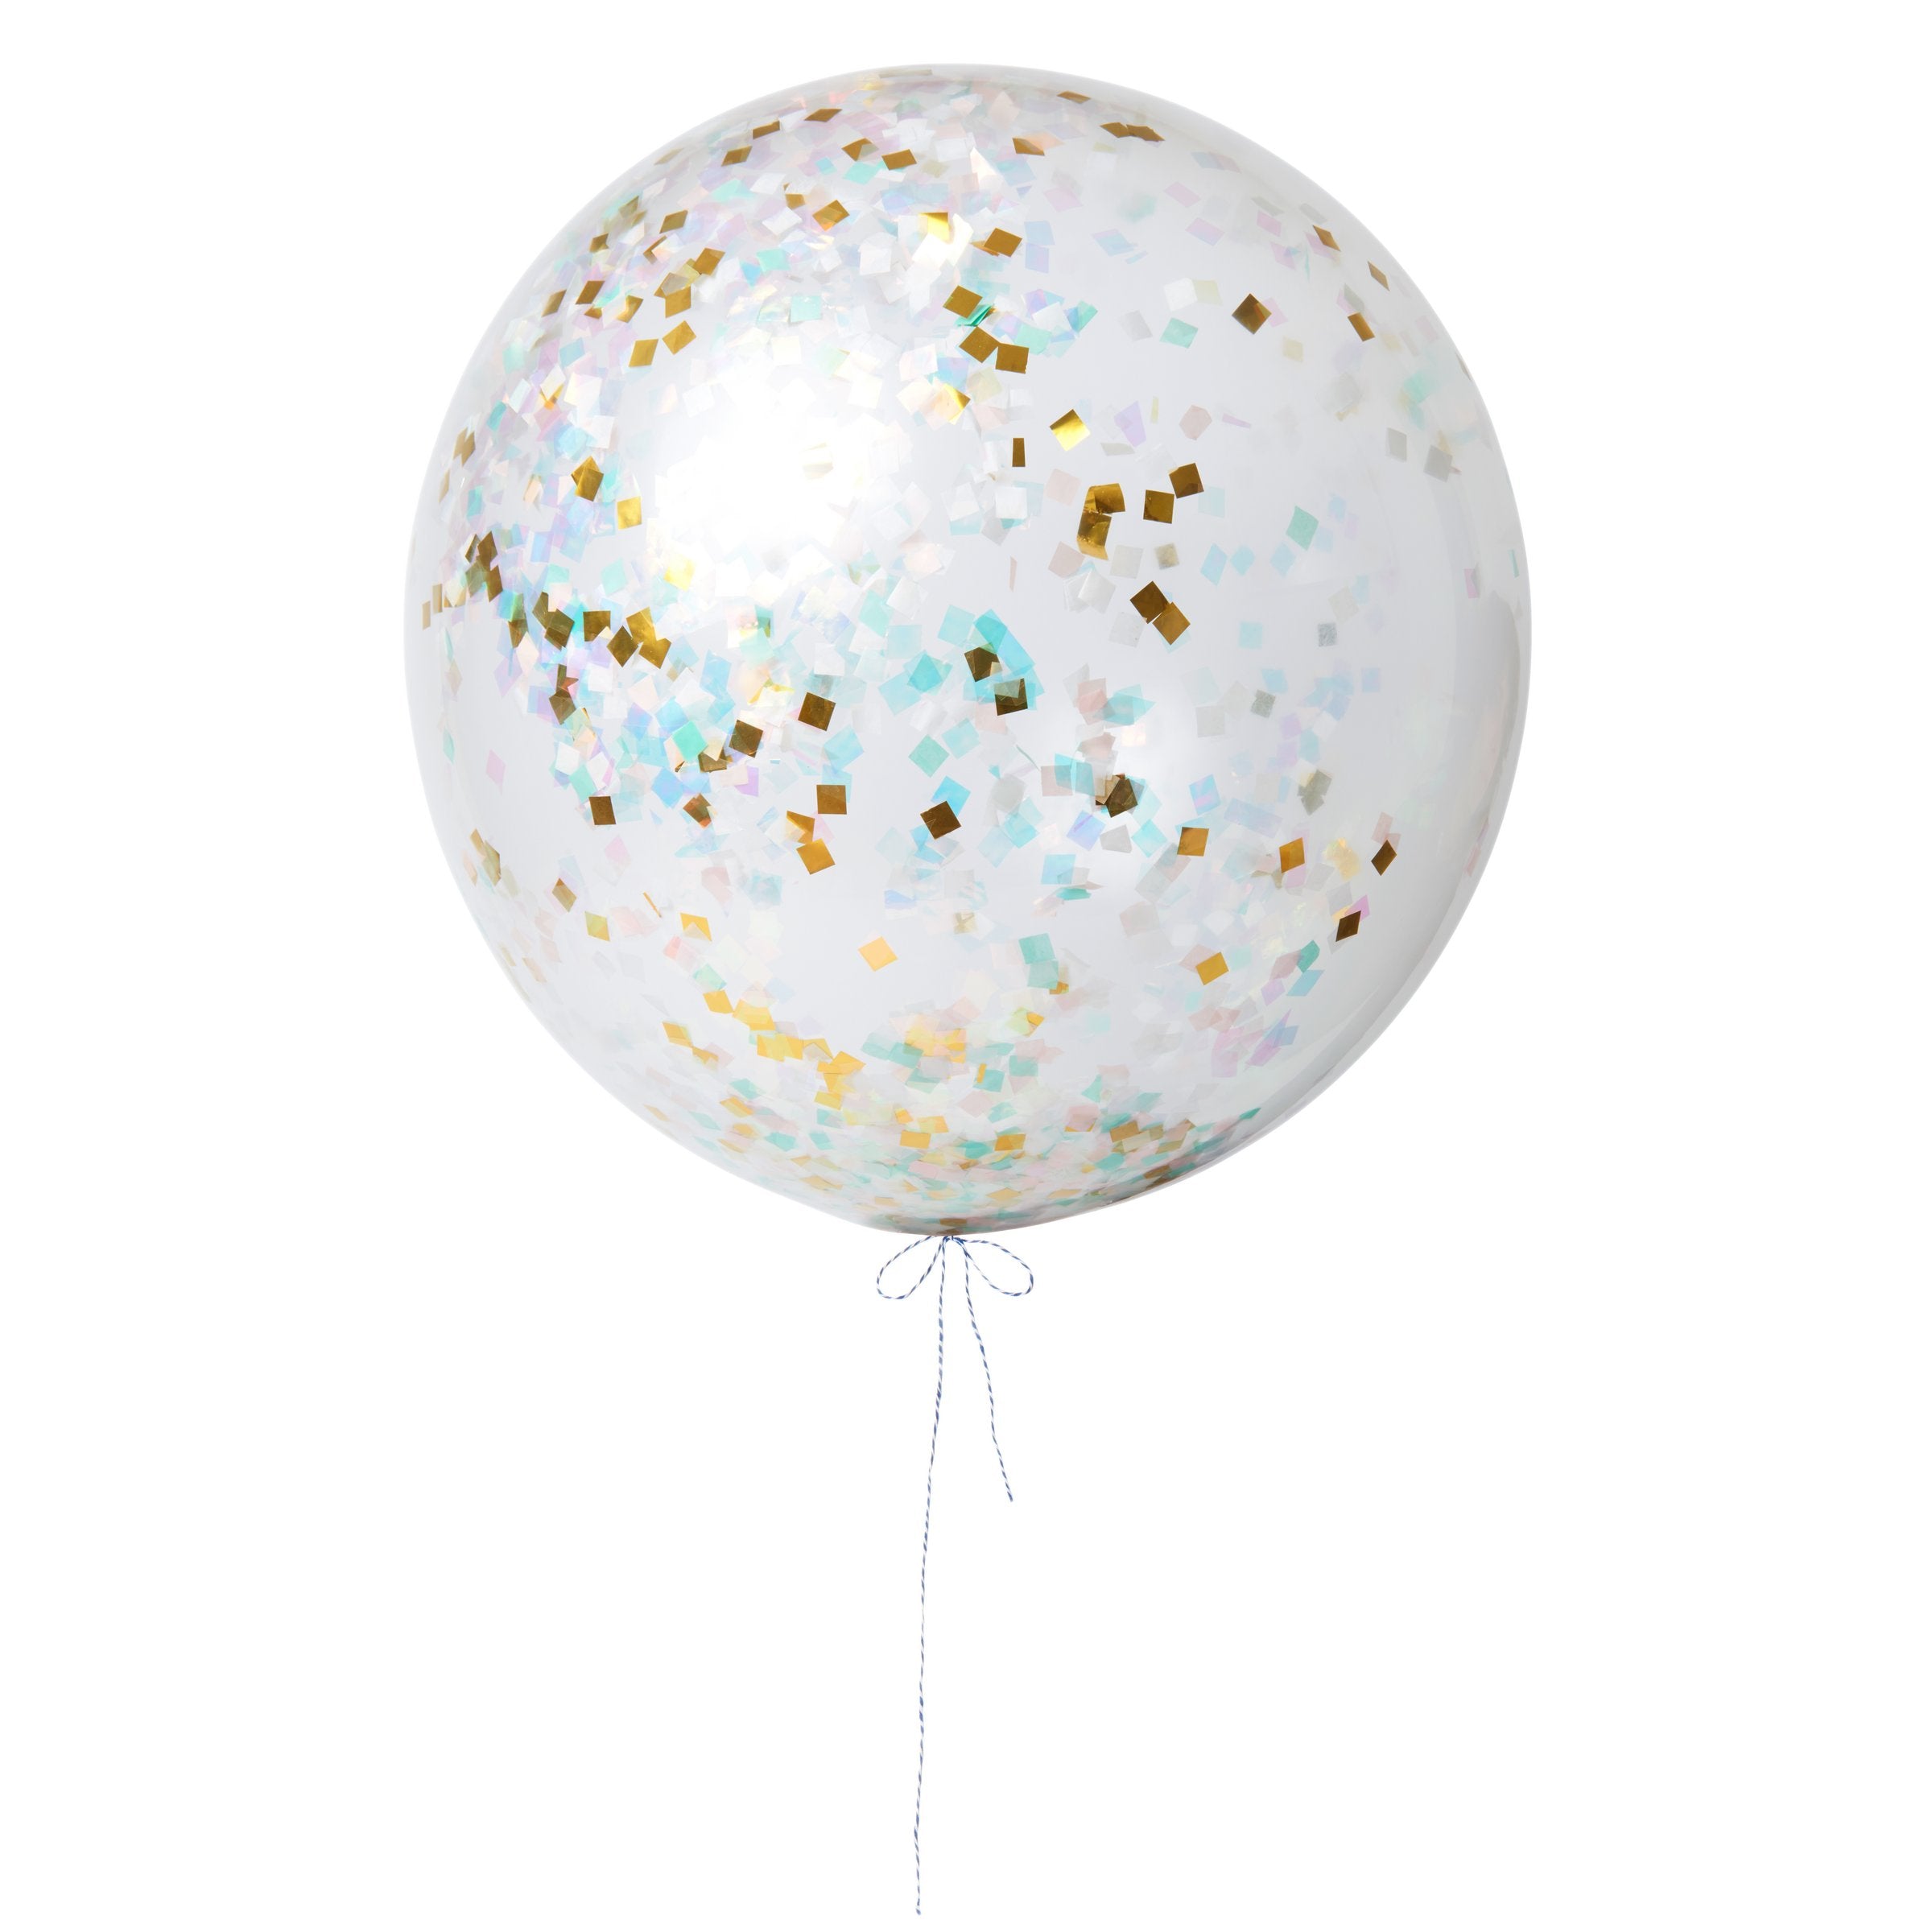 Iridescent Giant Confetti Balloon Kit